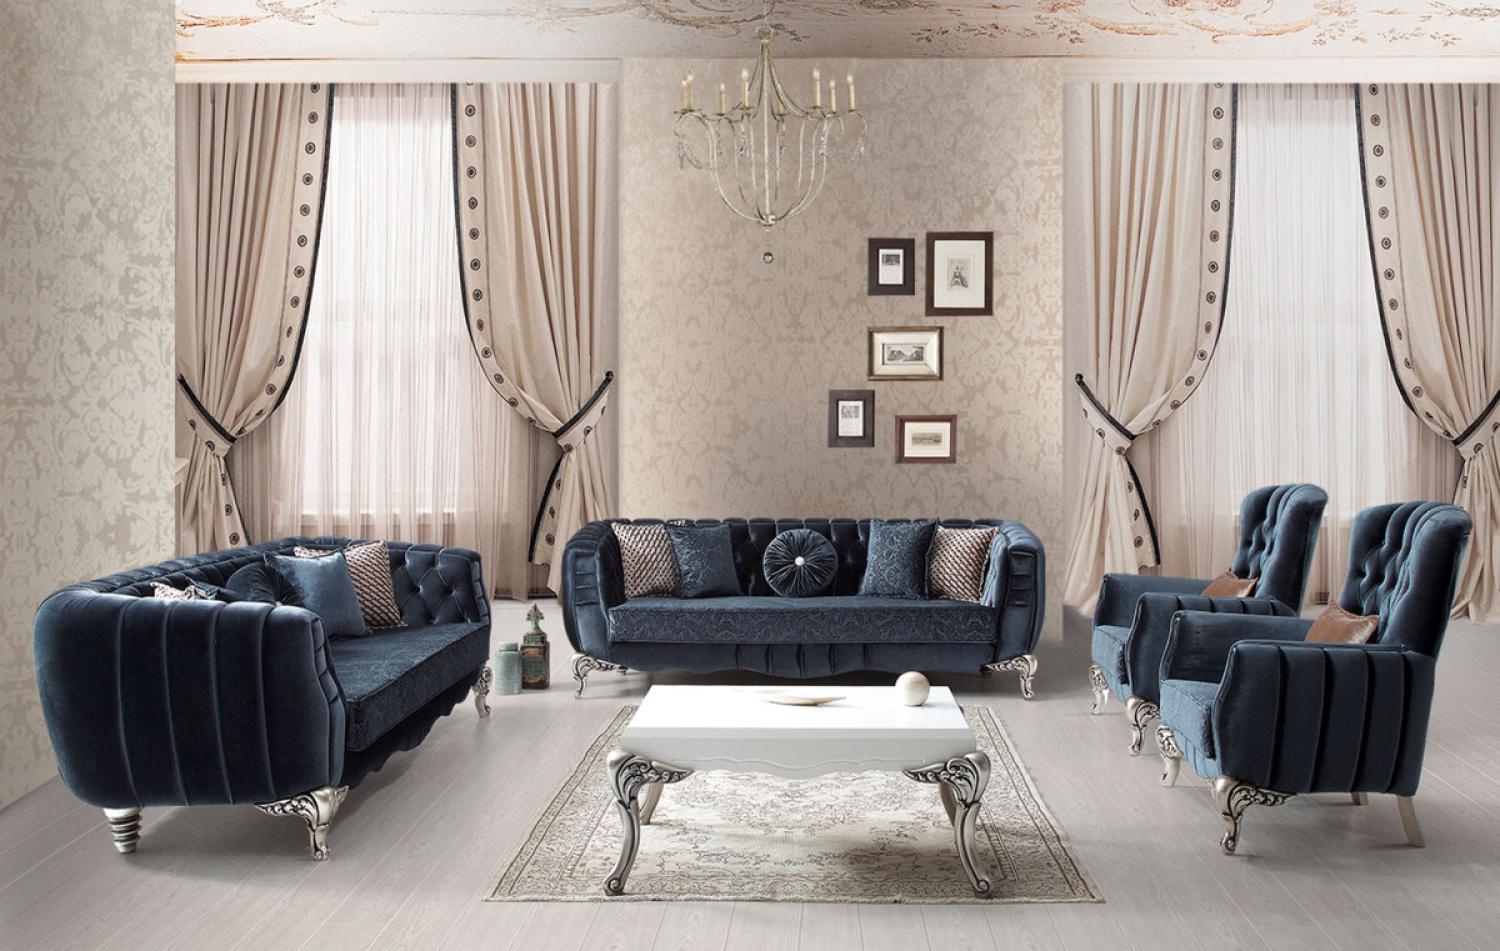 Casa Padrino Luxus Barock Wohnzimmer Set Blau / Silber - 2 Sofas & 2 Sessel & 1 Couchtisch - Elegante Wohnzimmer Möbel im Barockstil Bild 1